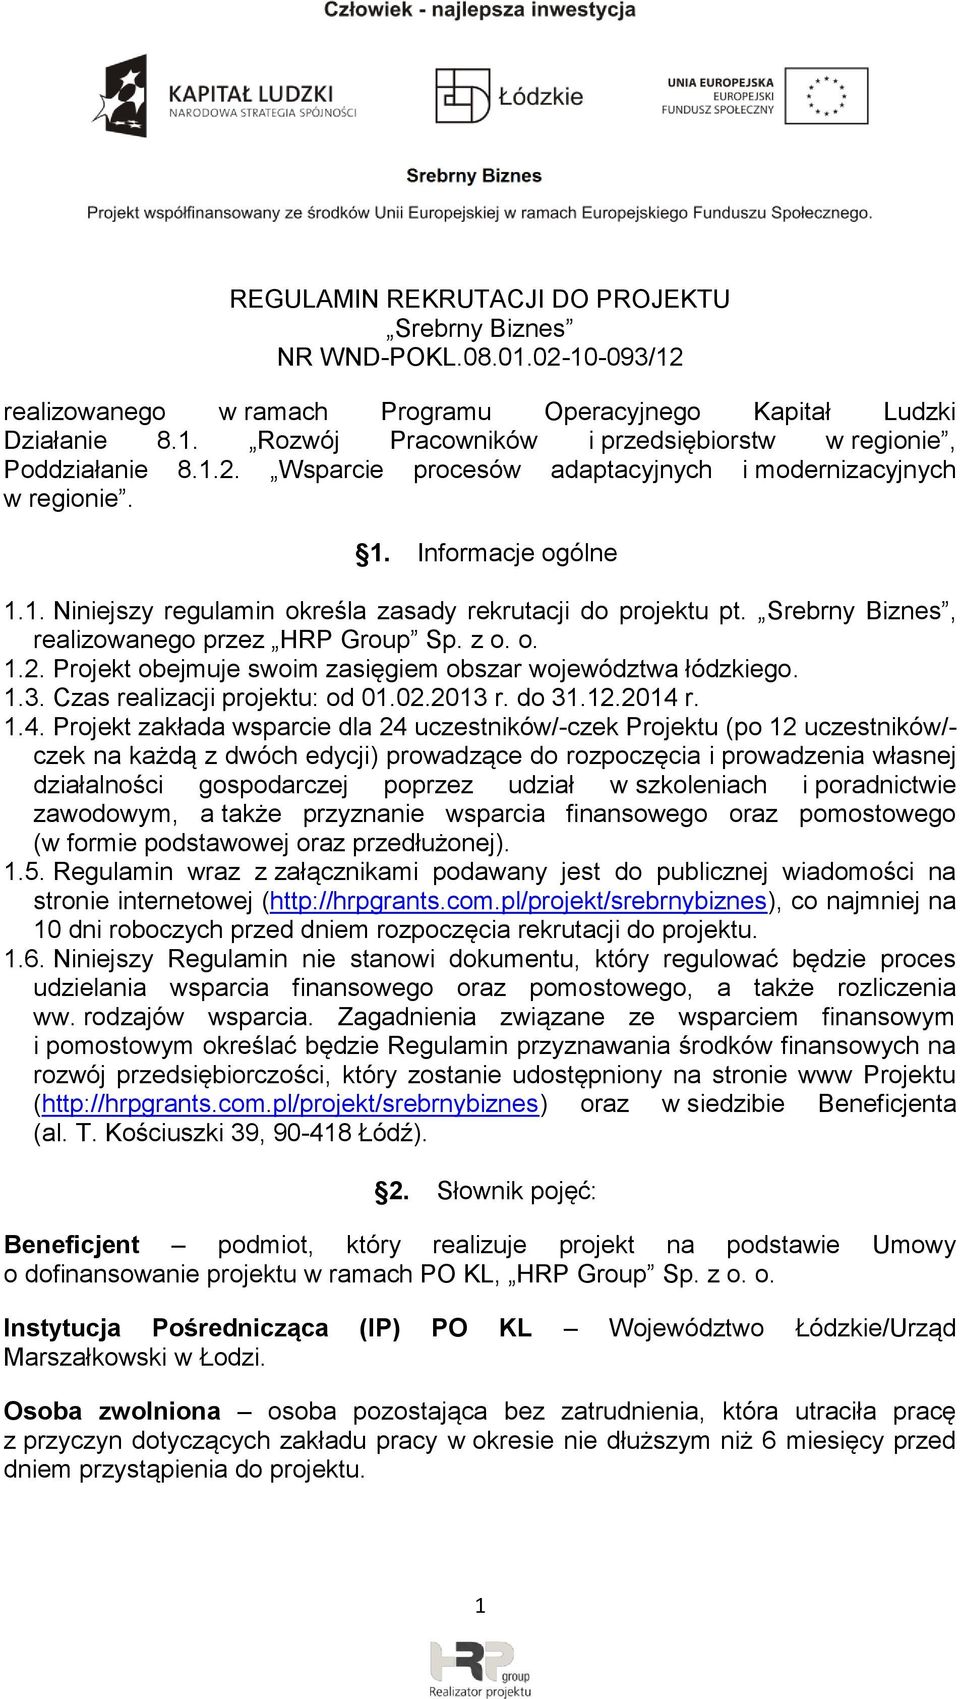 Srebrny Biznes, realizowanego przez HRP Group Sp. z o. o. 1.2. Projekt obejmuje swoim zasięgiem obszar województwa łódzkiego. 1.3. Czas realizacji projektu: od 01.02.2013 r. do 31.12.2014 